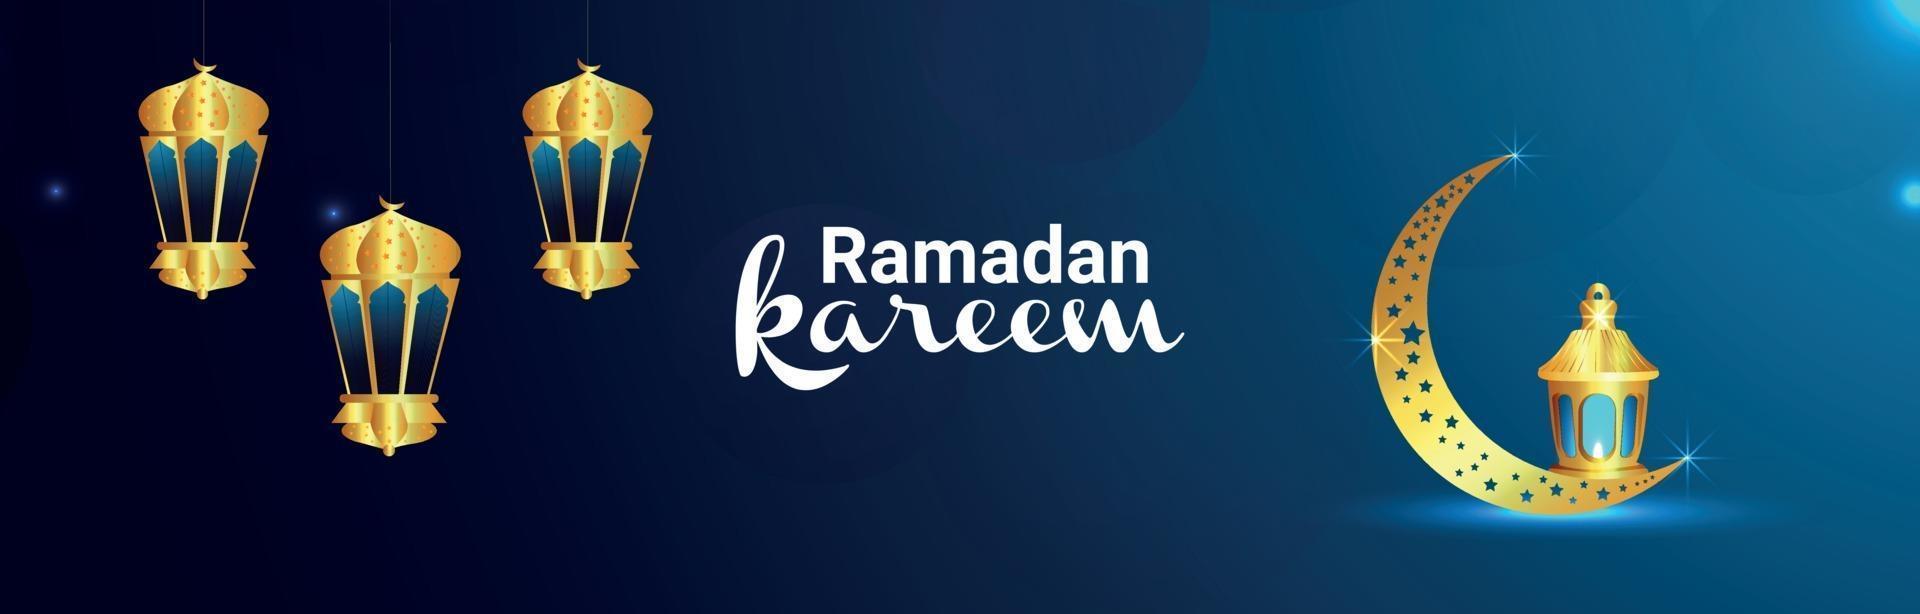 banner di ramadan kareem con lanterna islamica dorata e luna vettore